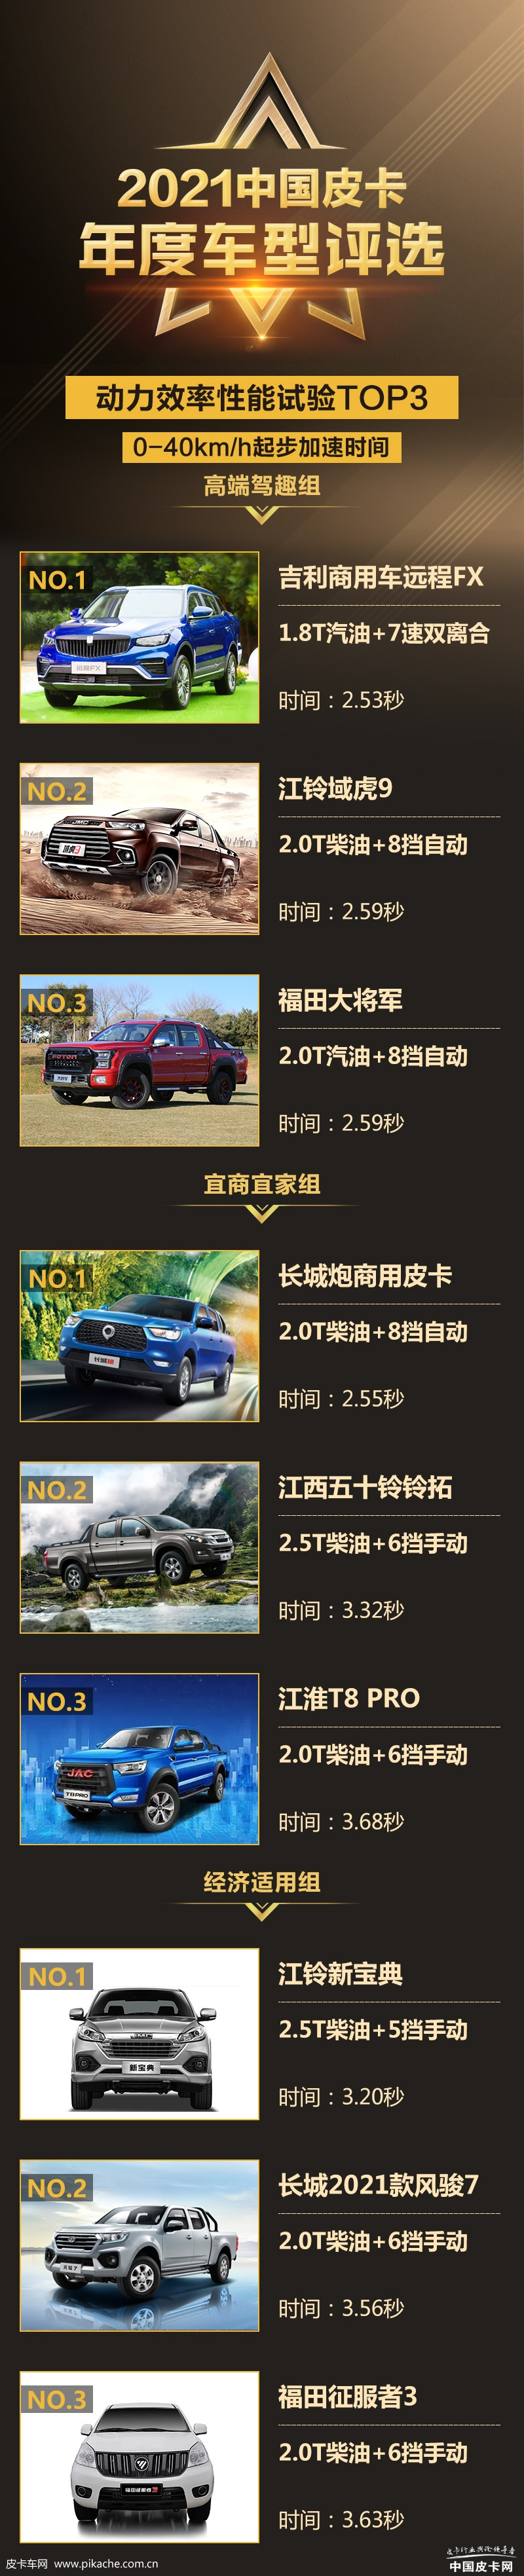 皮卡车加速测试成绩单，中国皮卡网年度评选动力效率成绩揭晓